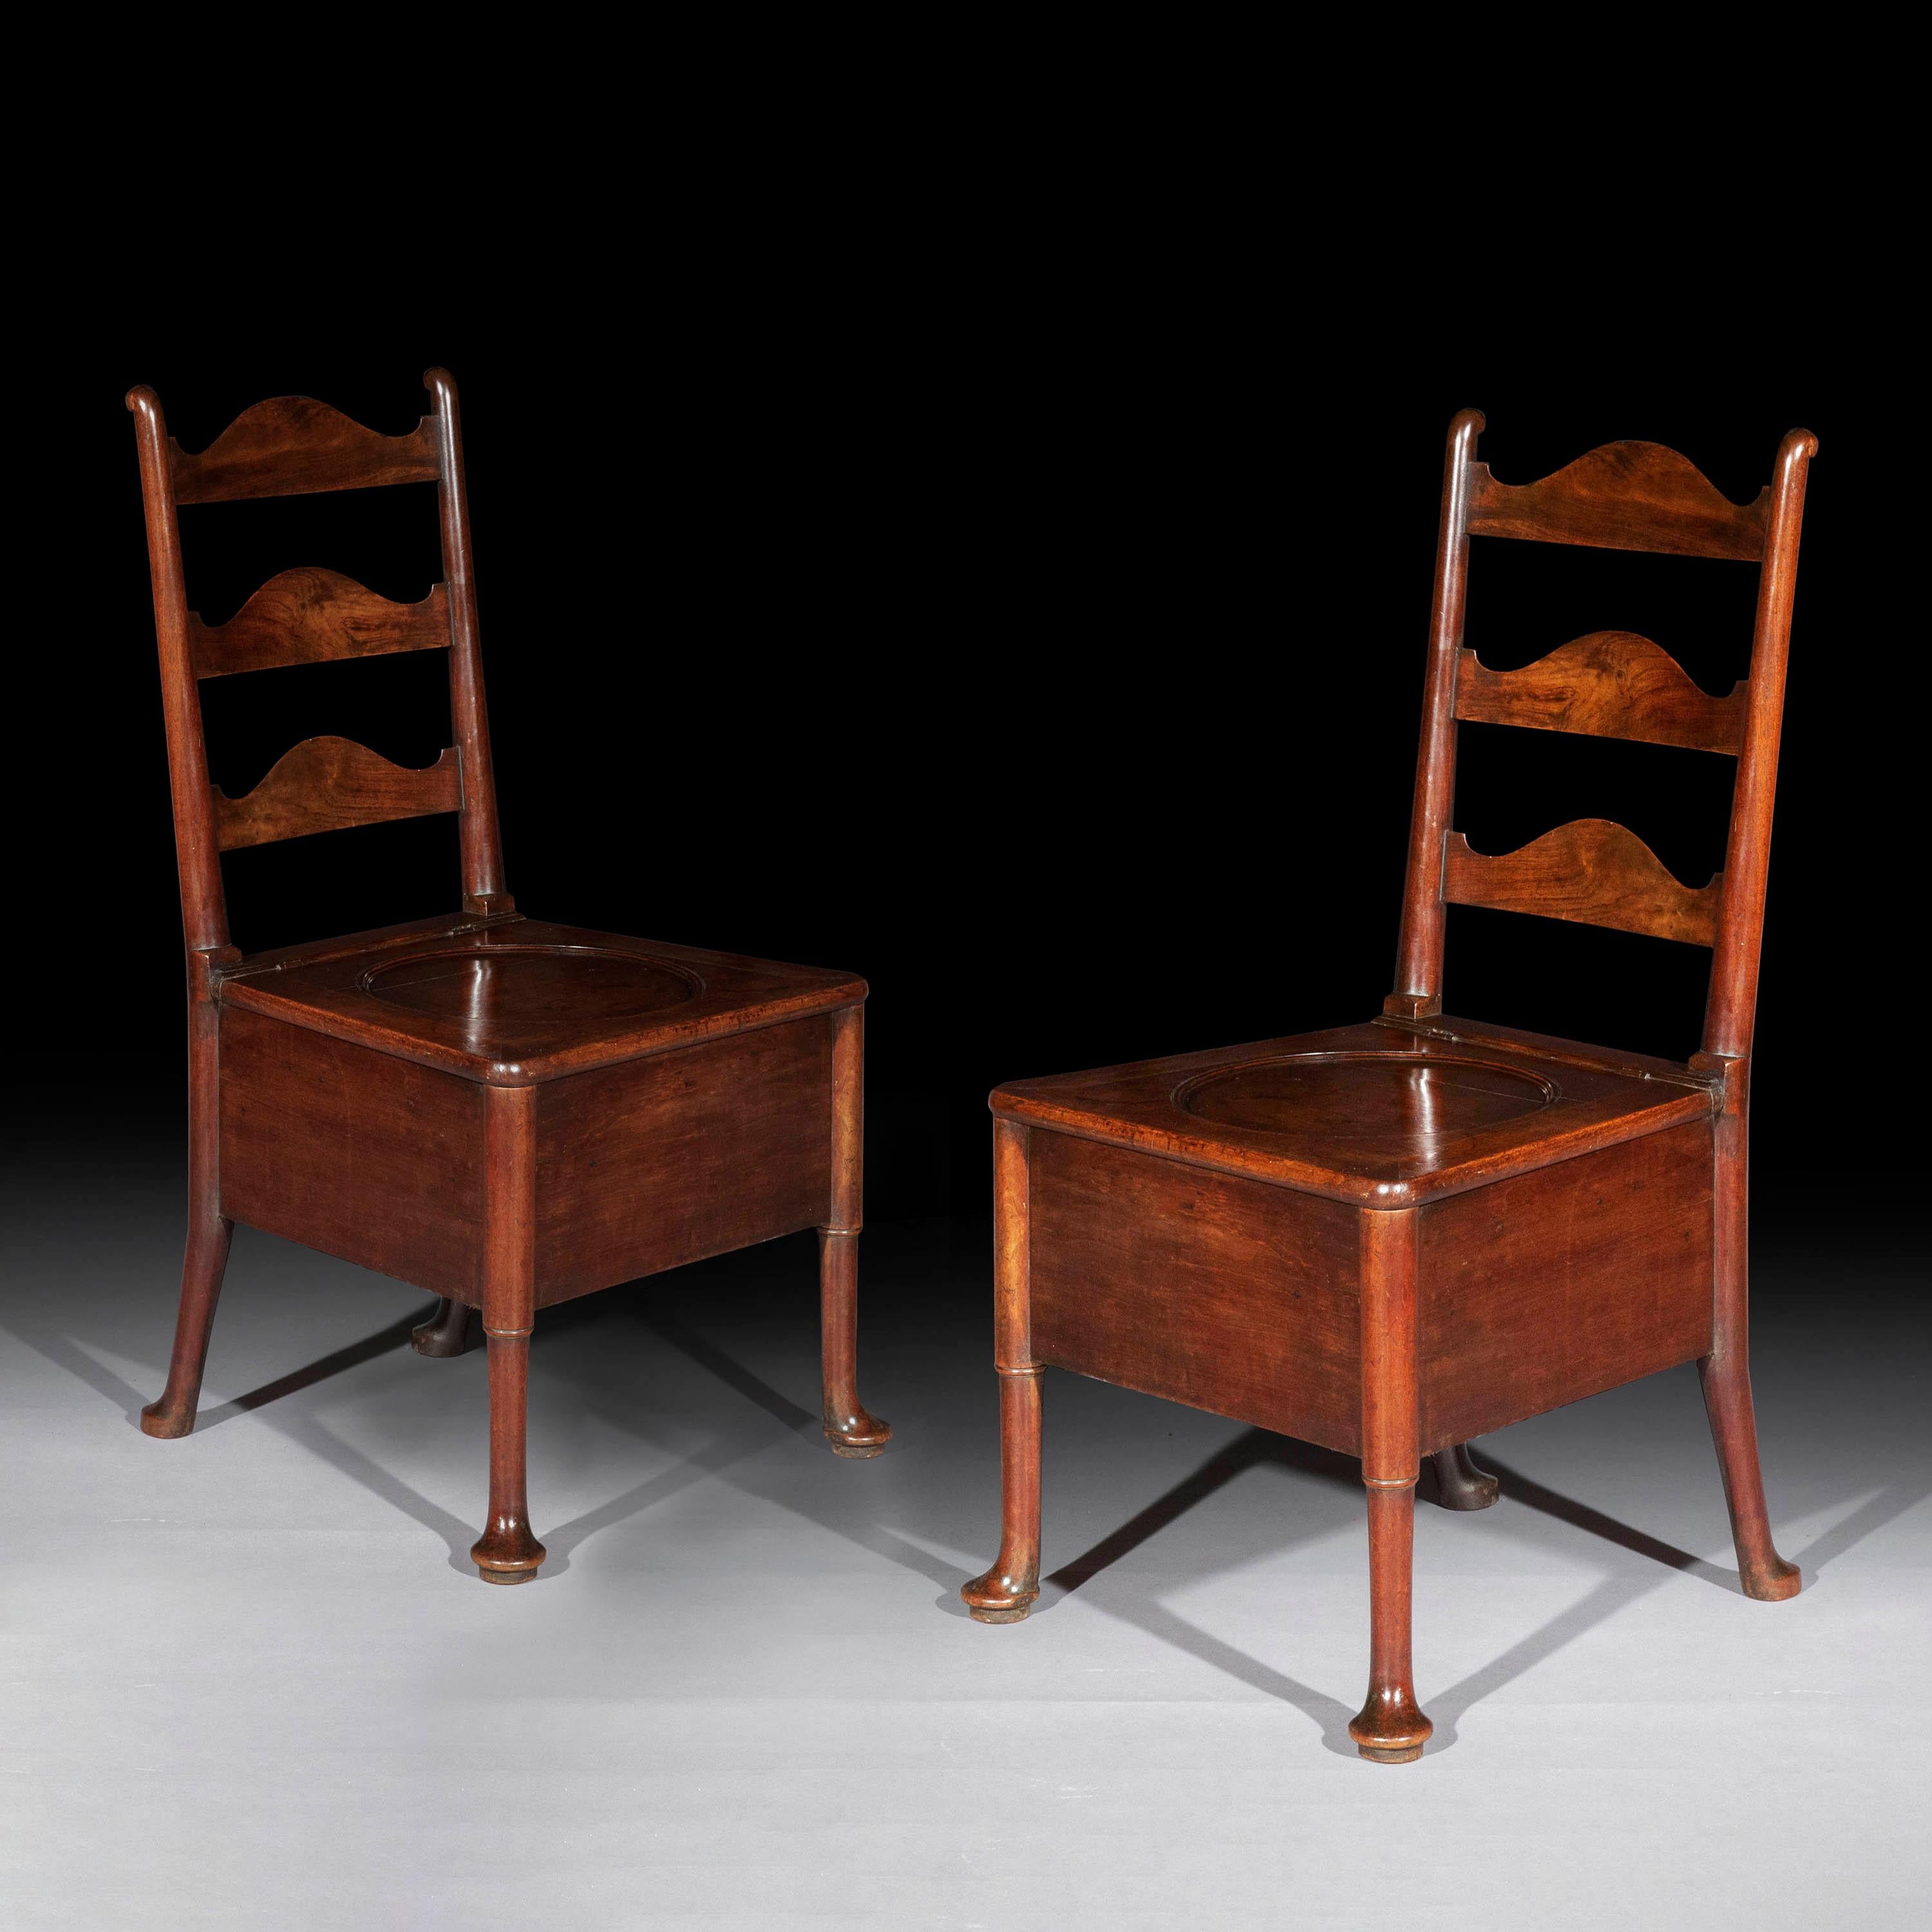 Paire de chaises de salle en noyer du début de la période géorgienne, à dossier en forme d'échelle, 
Origine britannique, vers 1740.

Pourquoi nous l'aimons
Il est très rare que le design vernaculaire soit aussi bien réalisé. Nous aimons le design